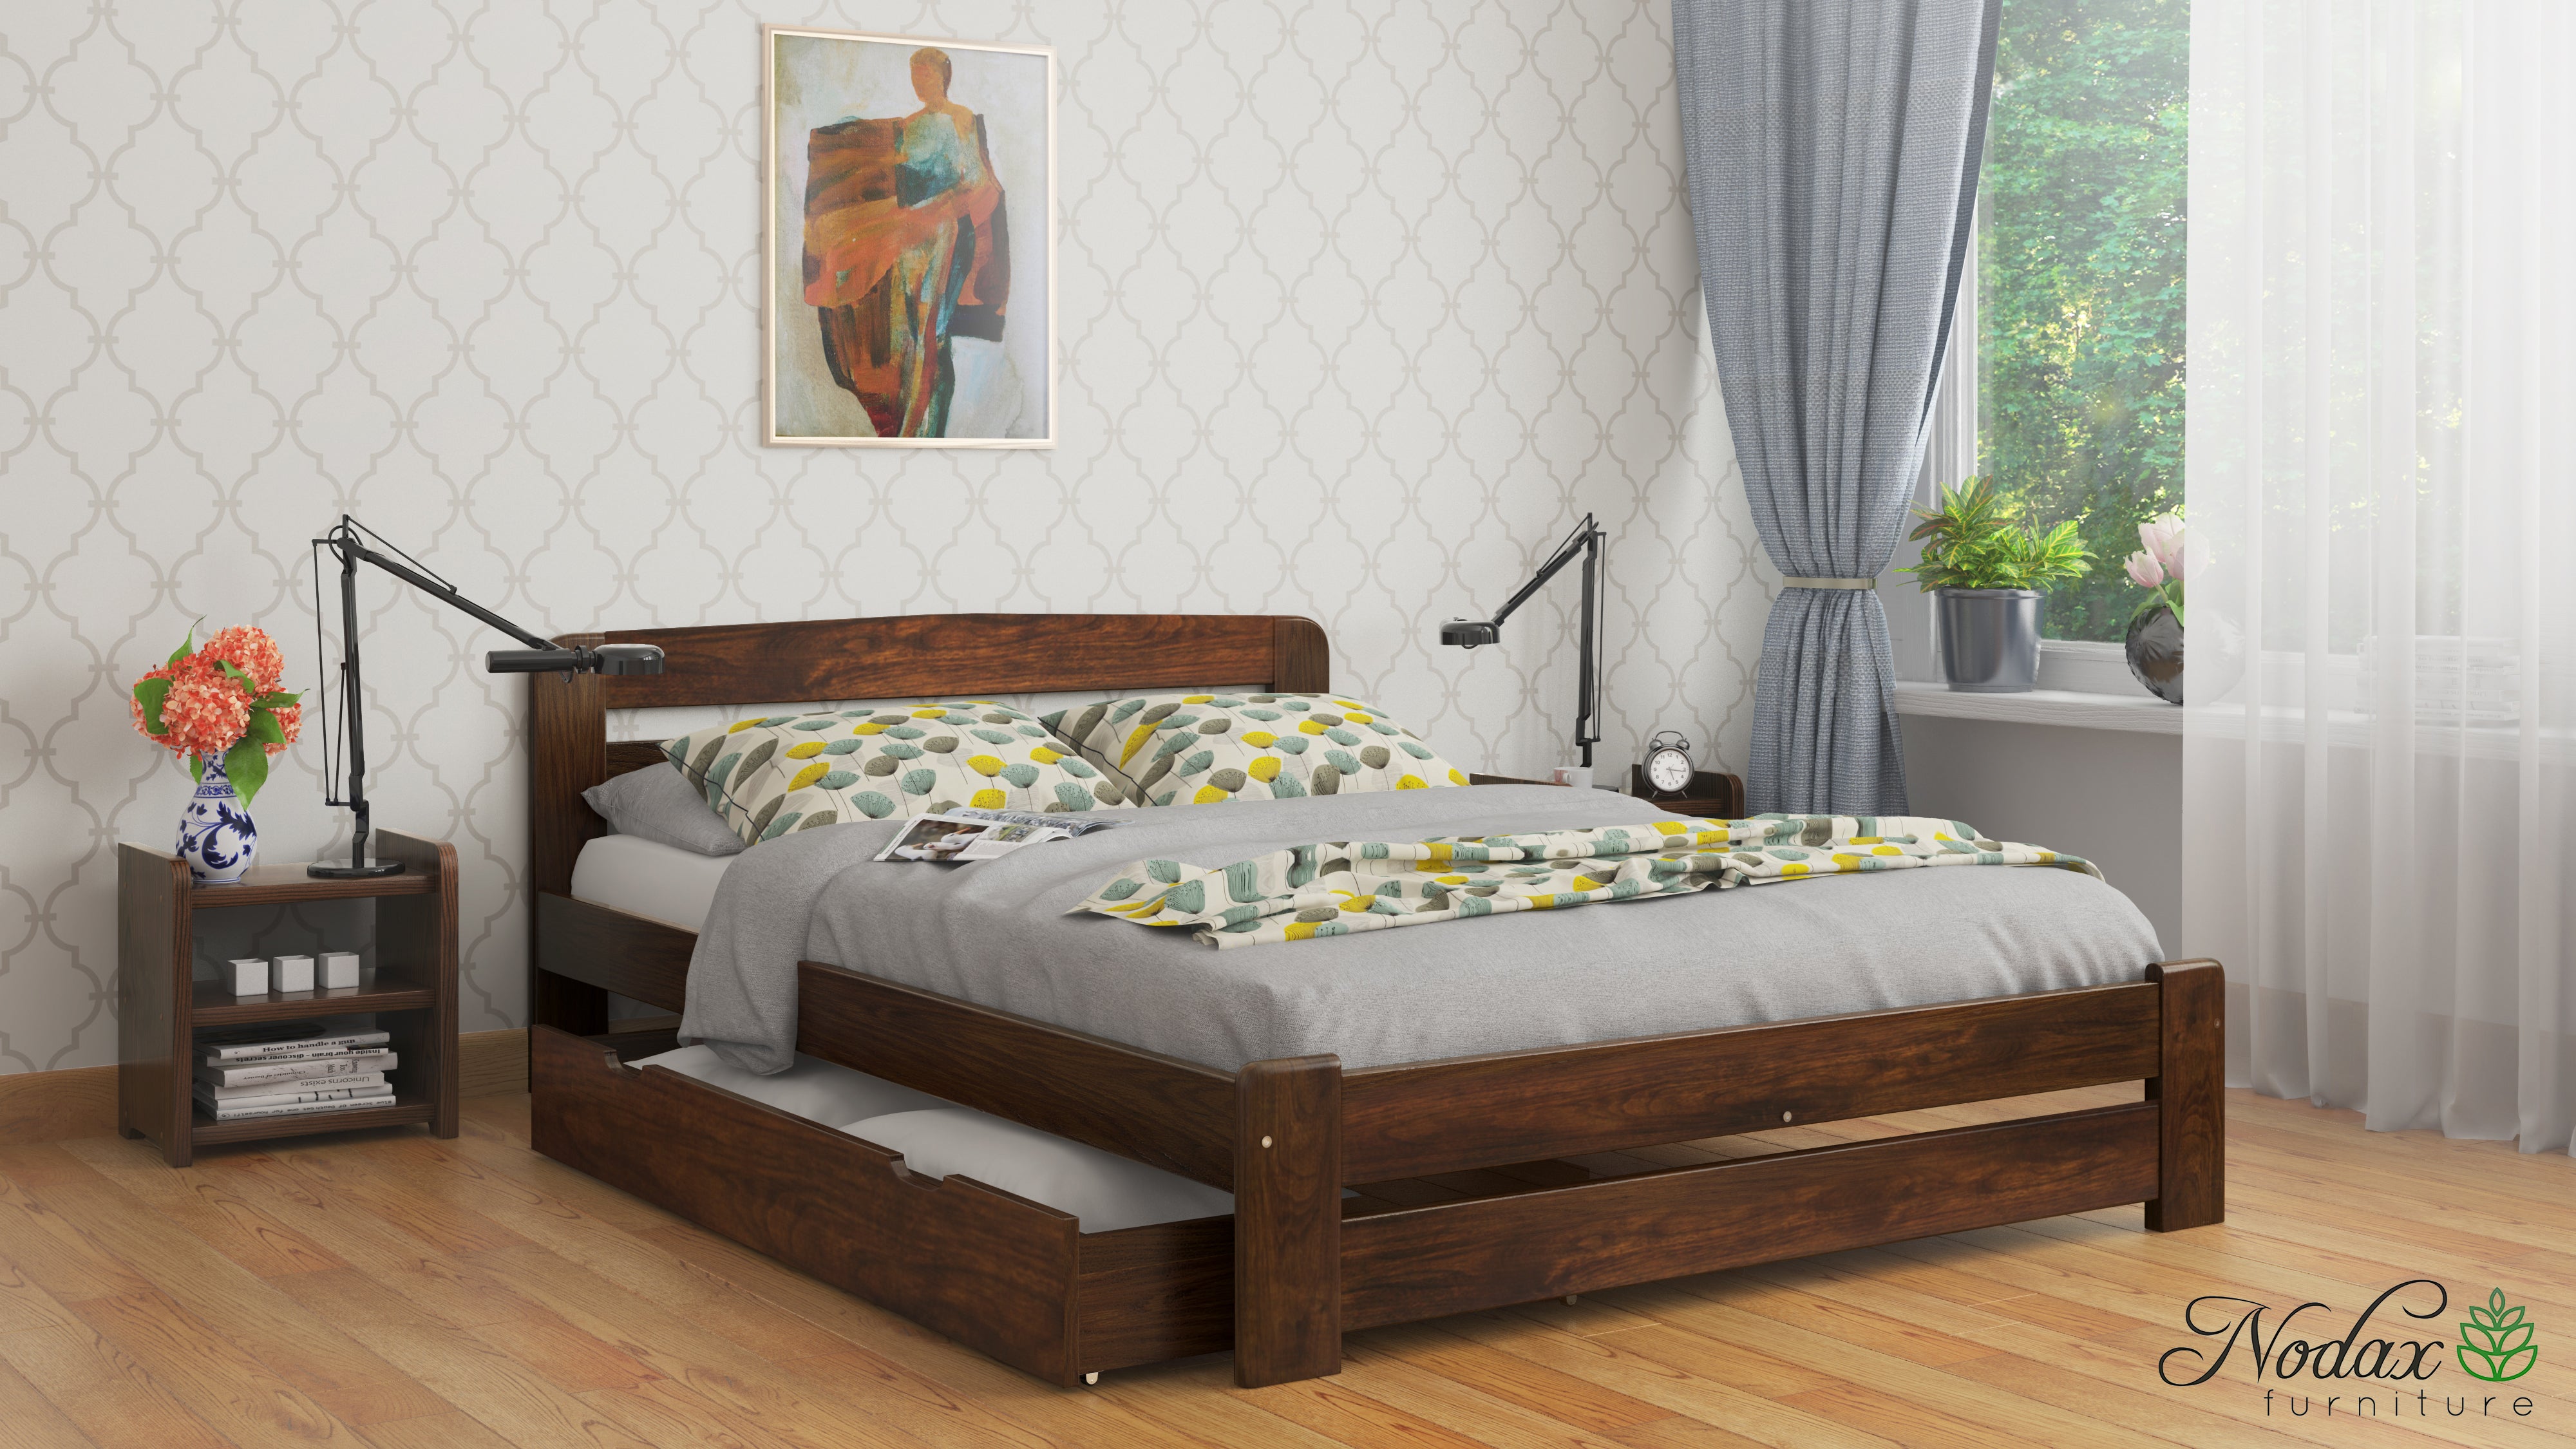 Wooden-bed-frame-F1-beds-online-modern